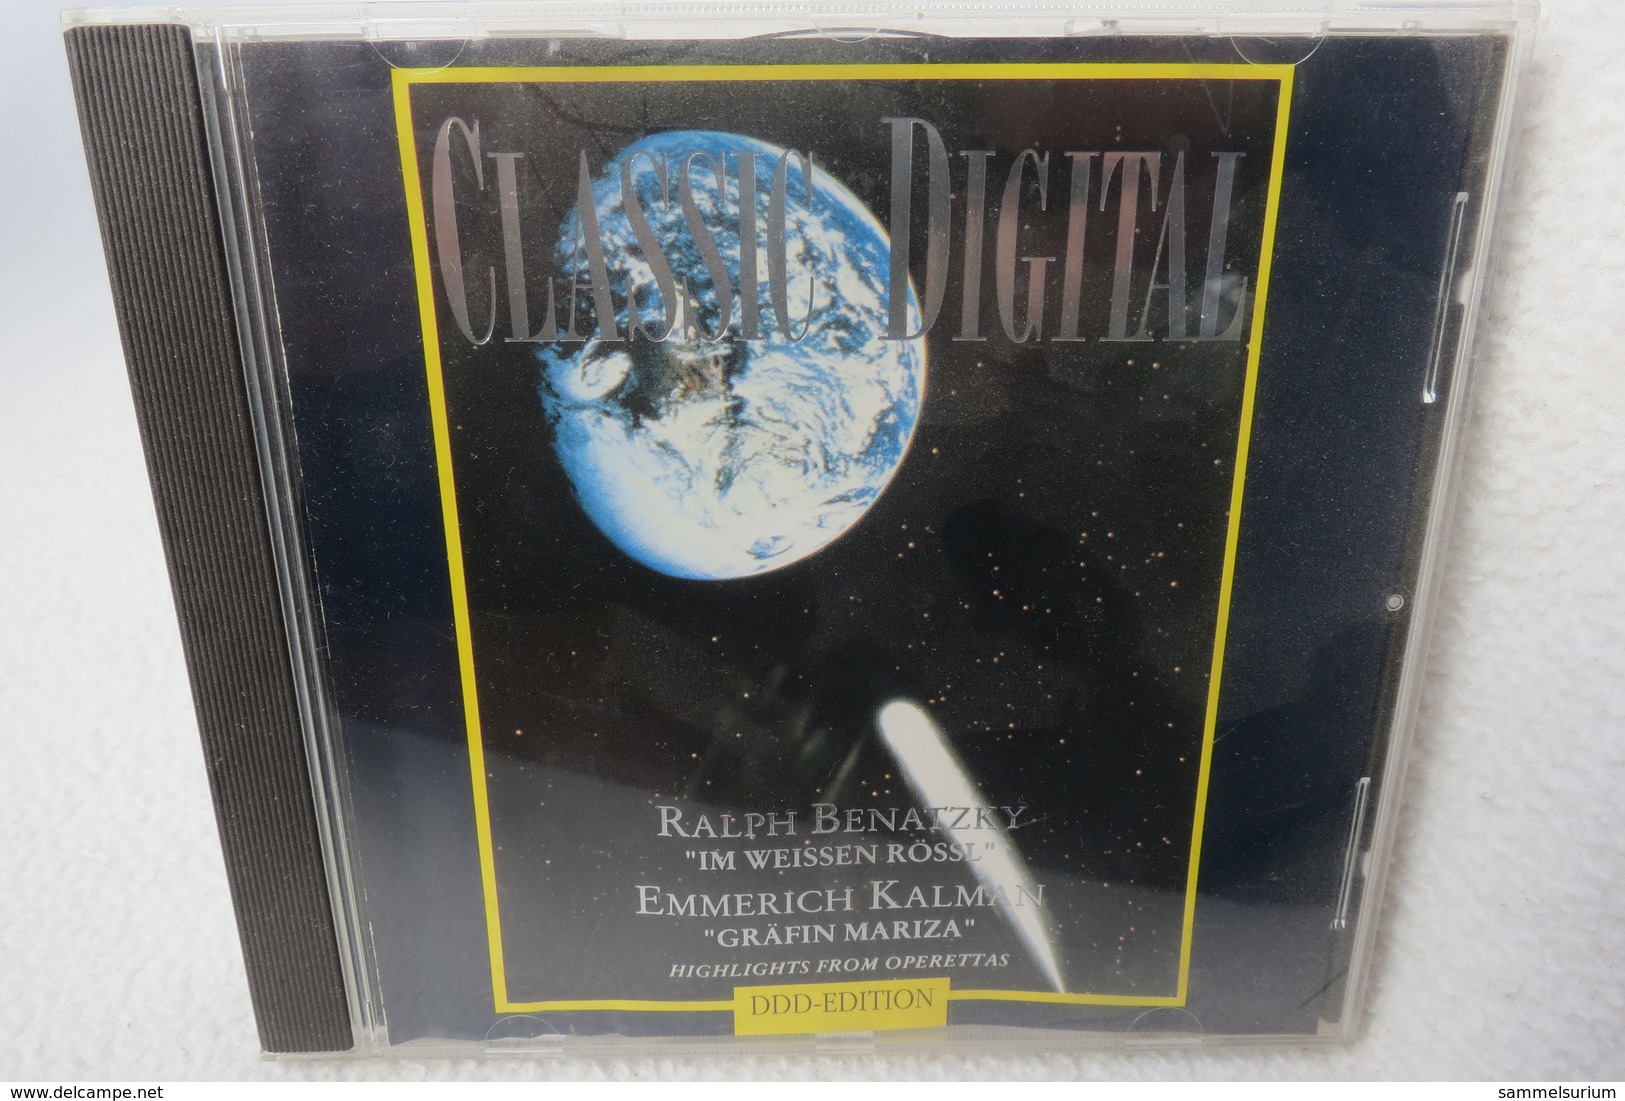 CD "Ralph Benatzky / Emmerich Kalmann" Highlights Aus Operetten - Oper & Operette